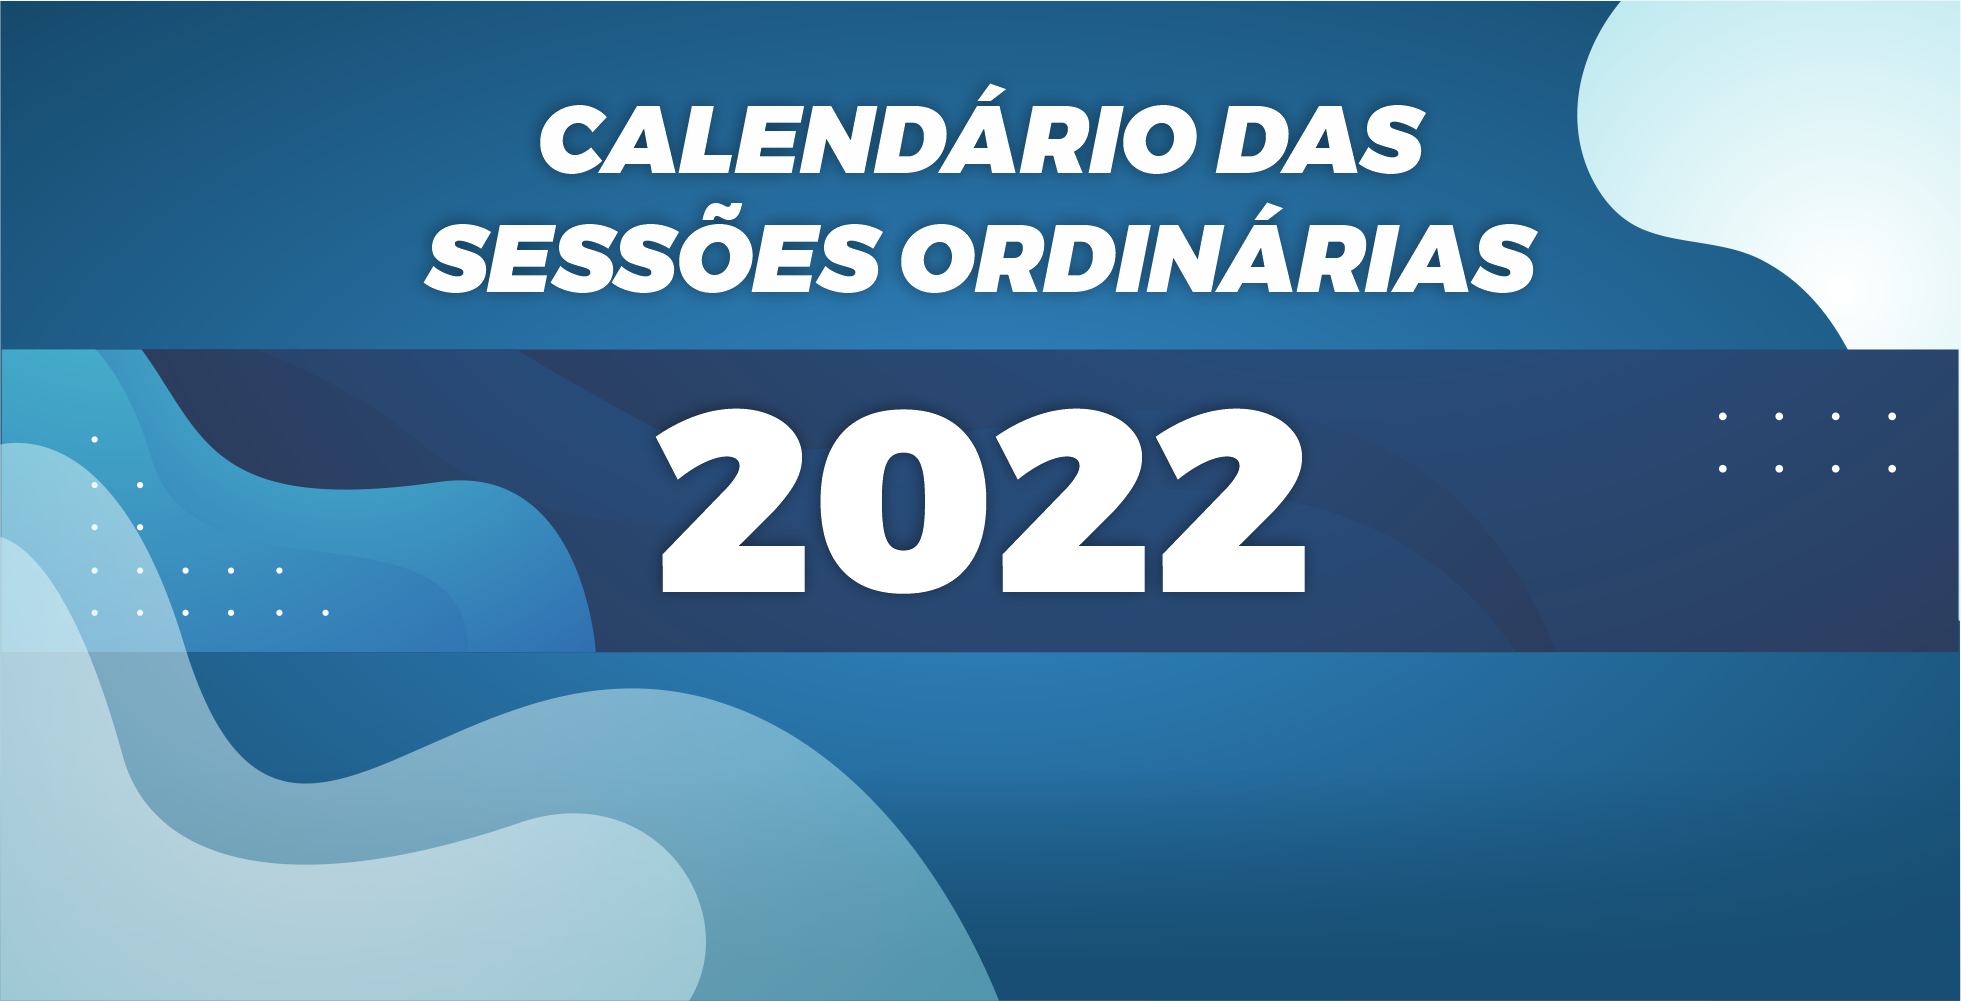 SESSÕES ORDINÁRIAS 2022